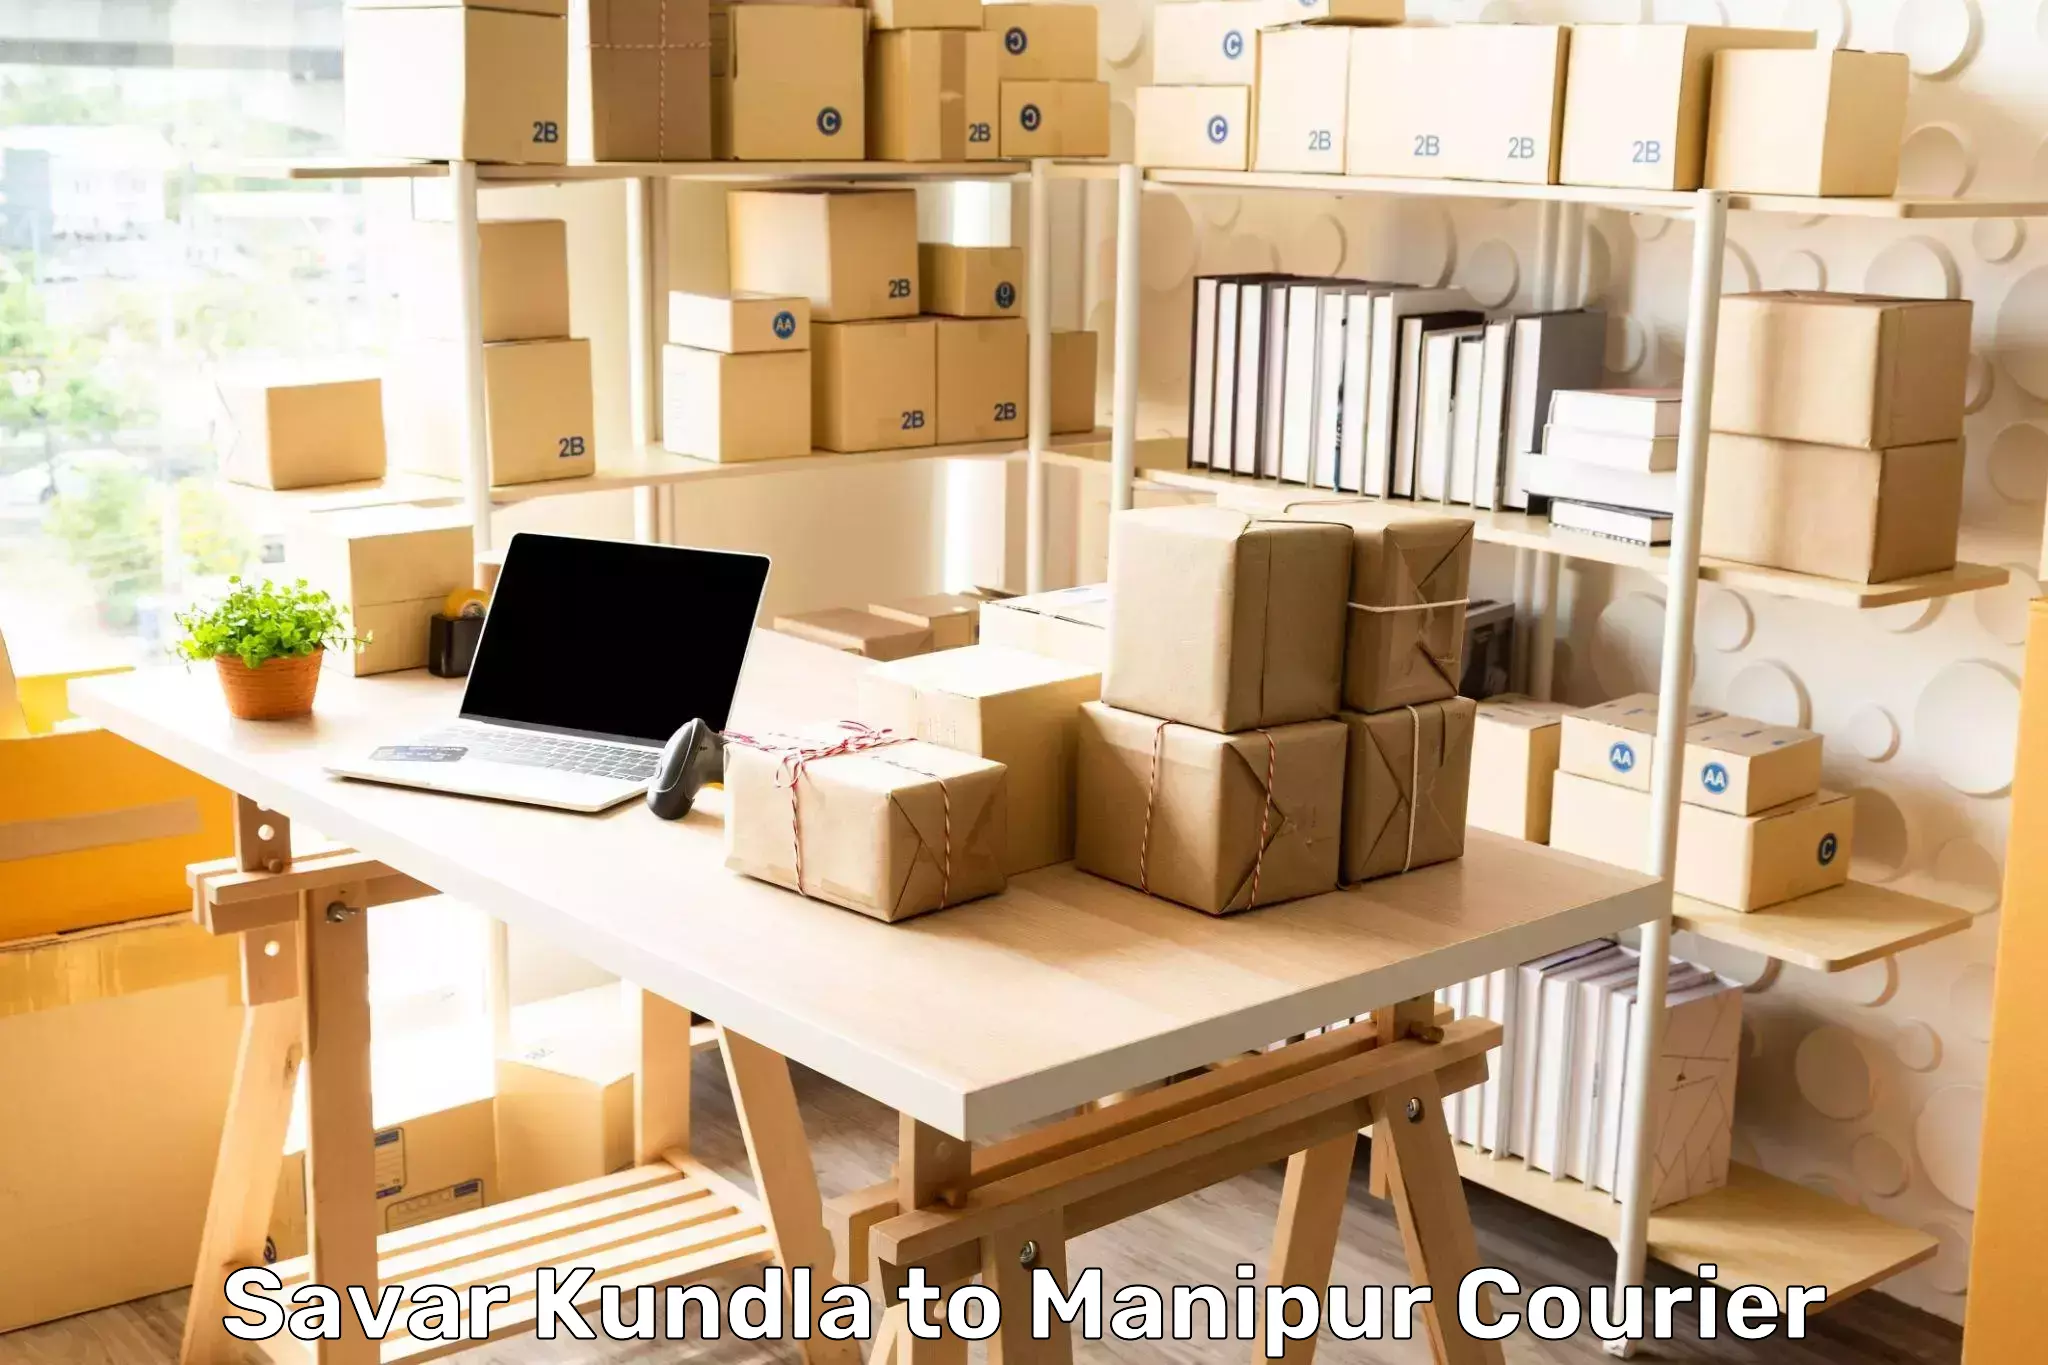 Global courier networks in Savar Kundla to Chandel